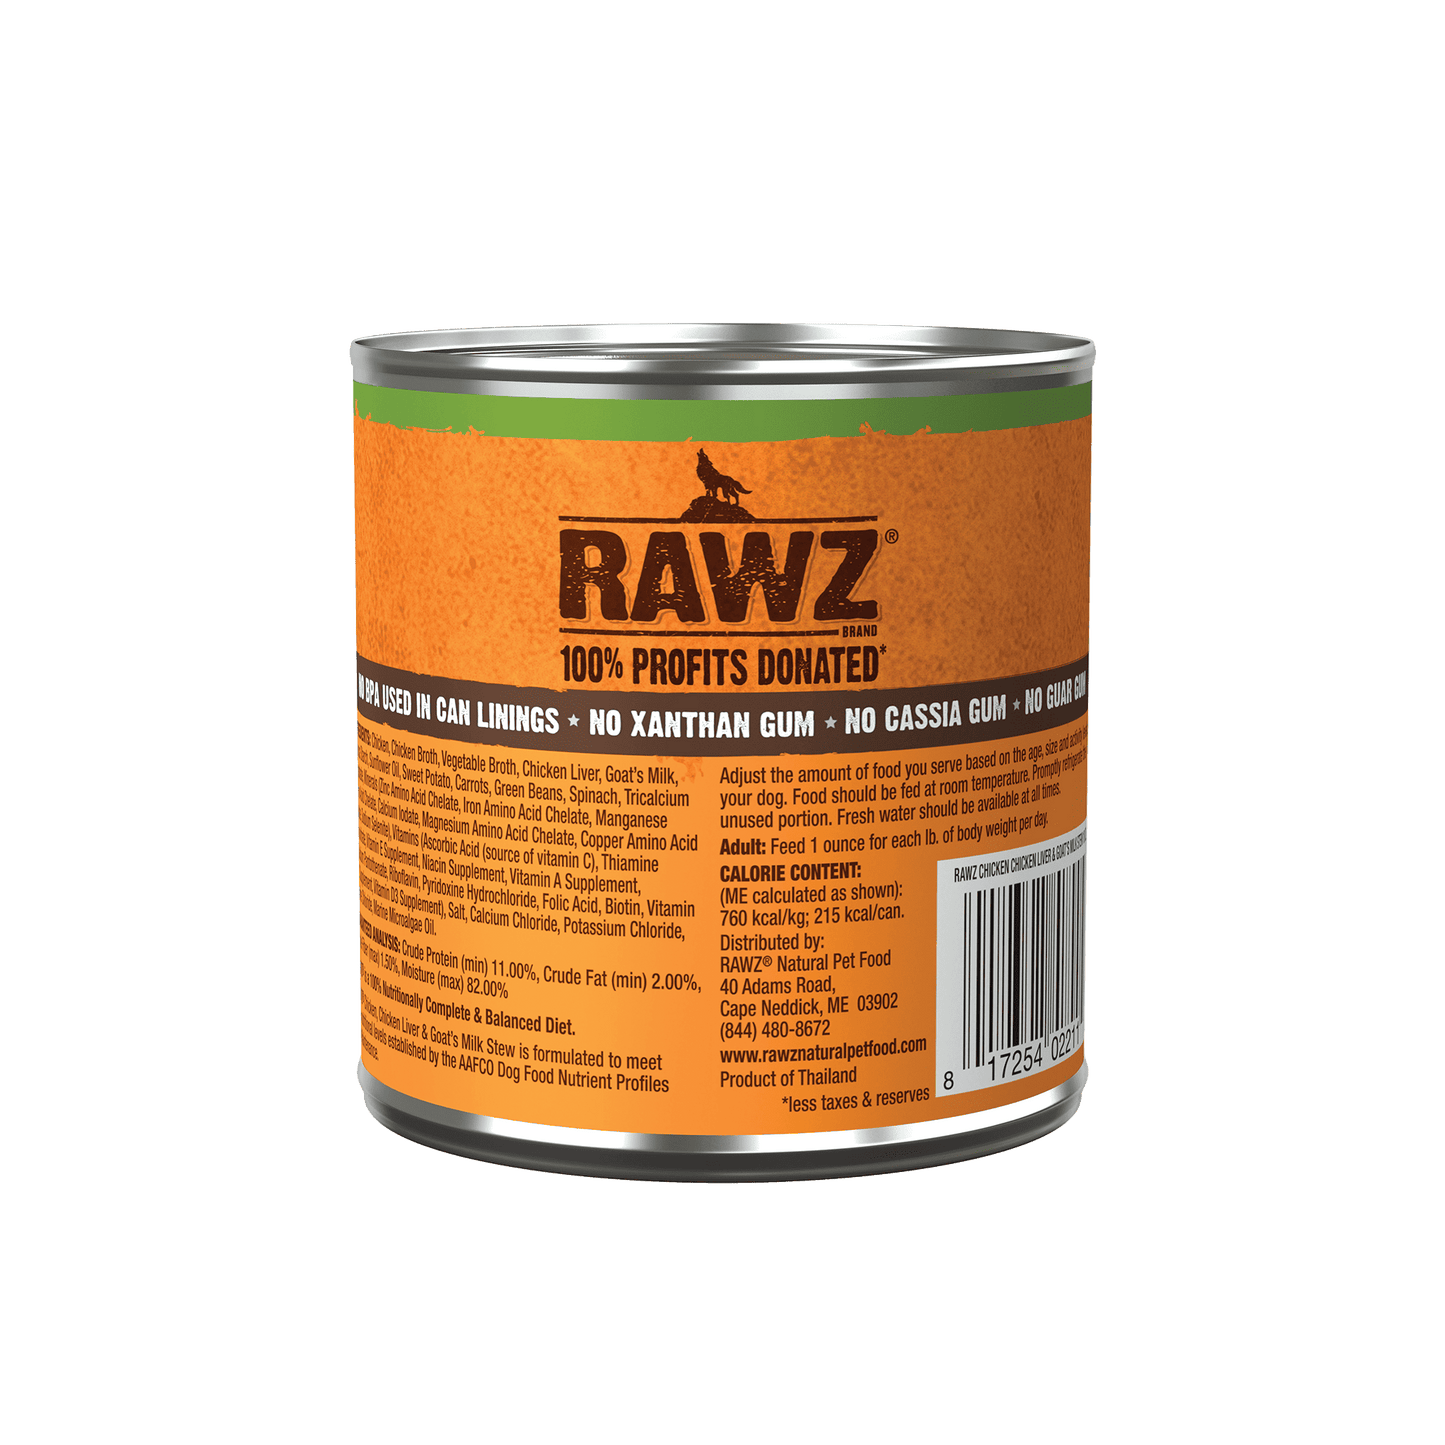 Rawz Chicken, Chicken Liver & Goat's Milk Stew-10oz